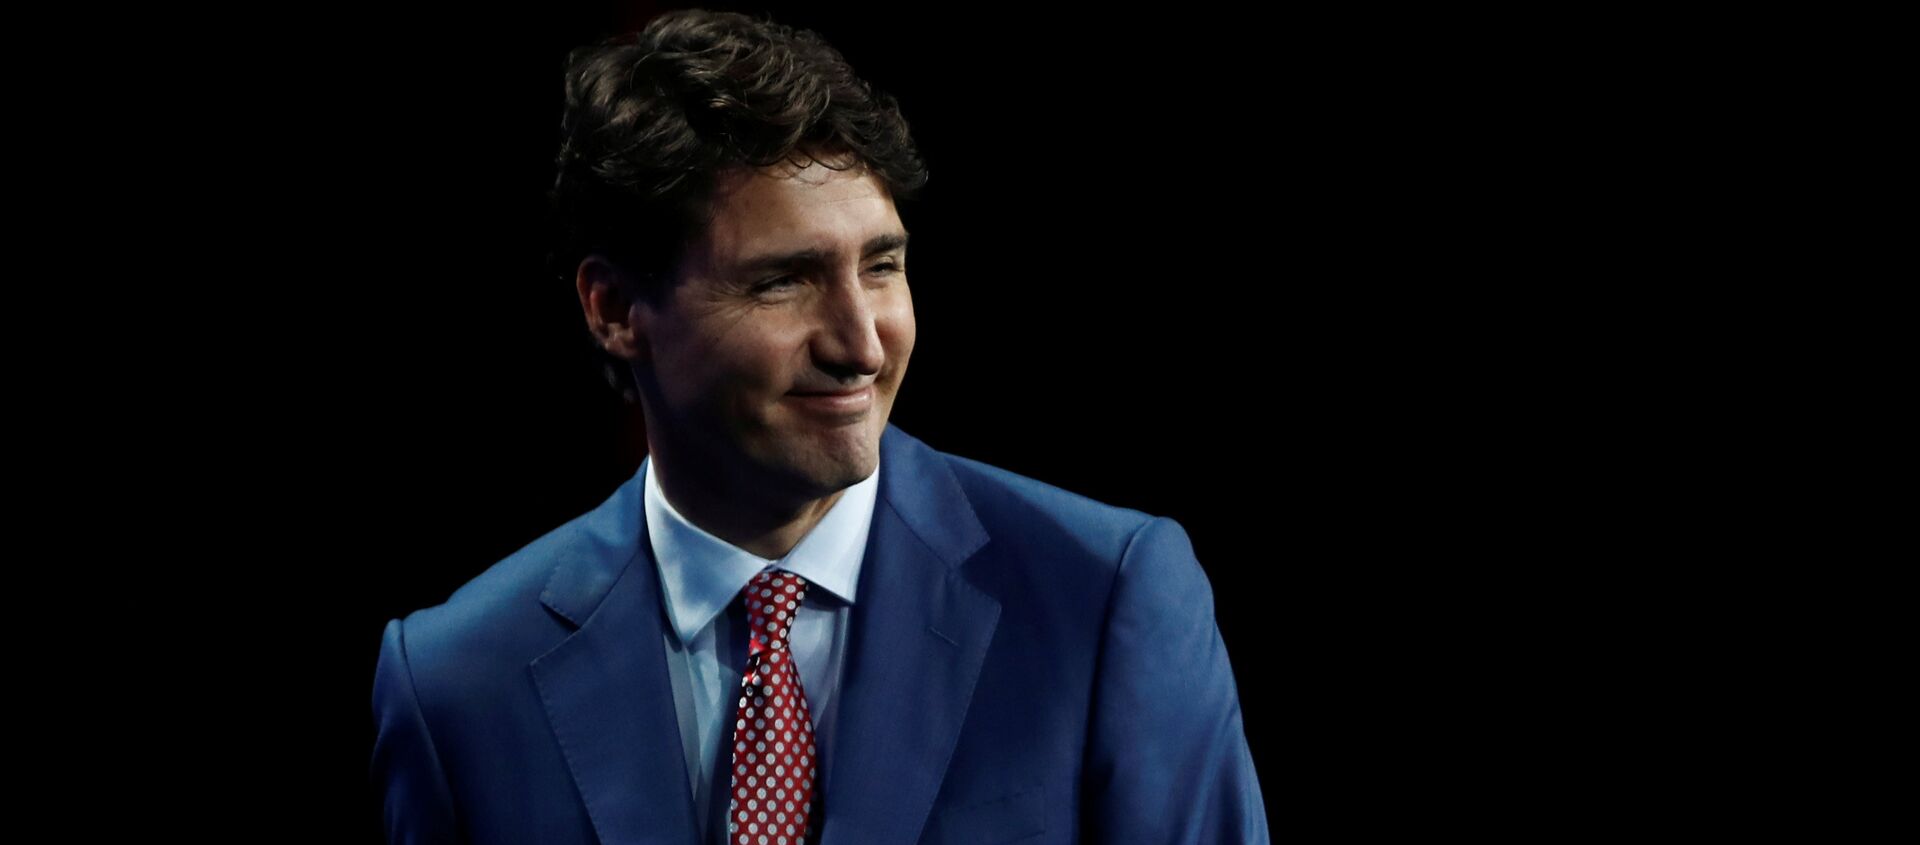 Kanada Başbakanı Justin Trudeau - Sputnik Türkiye, 1920, 26.09.2017